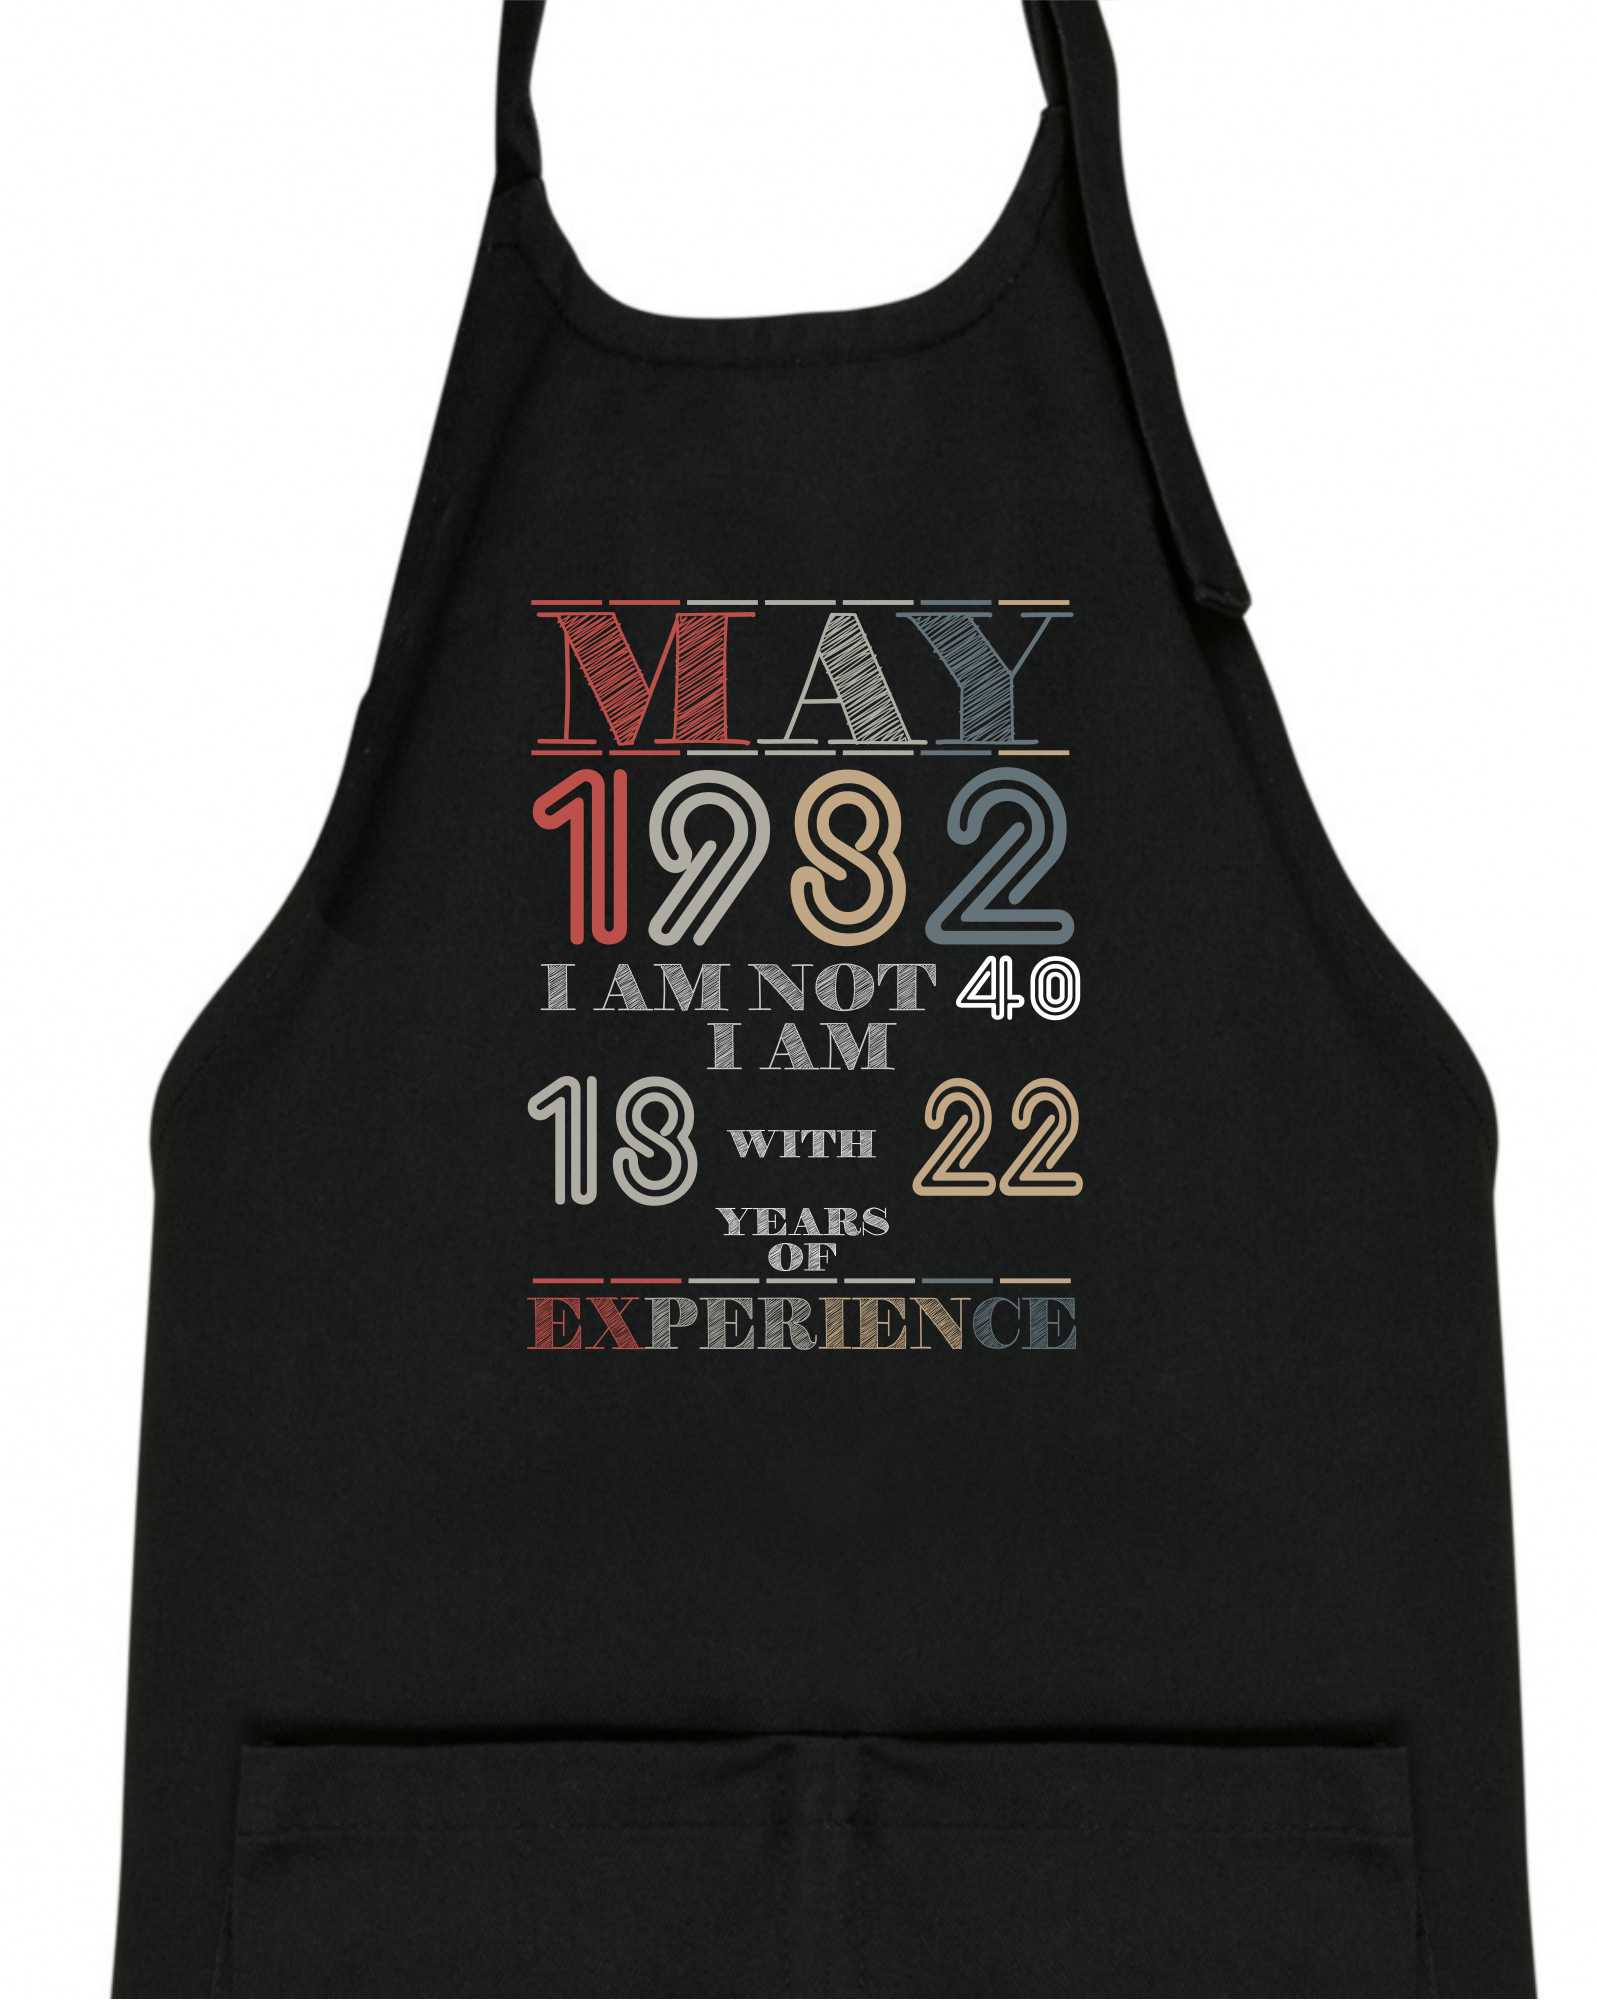 Narozeniny experience 1982 May - Dětská zástěra na vaření